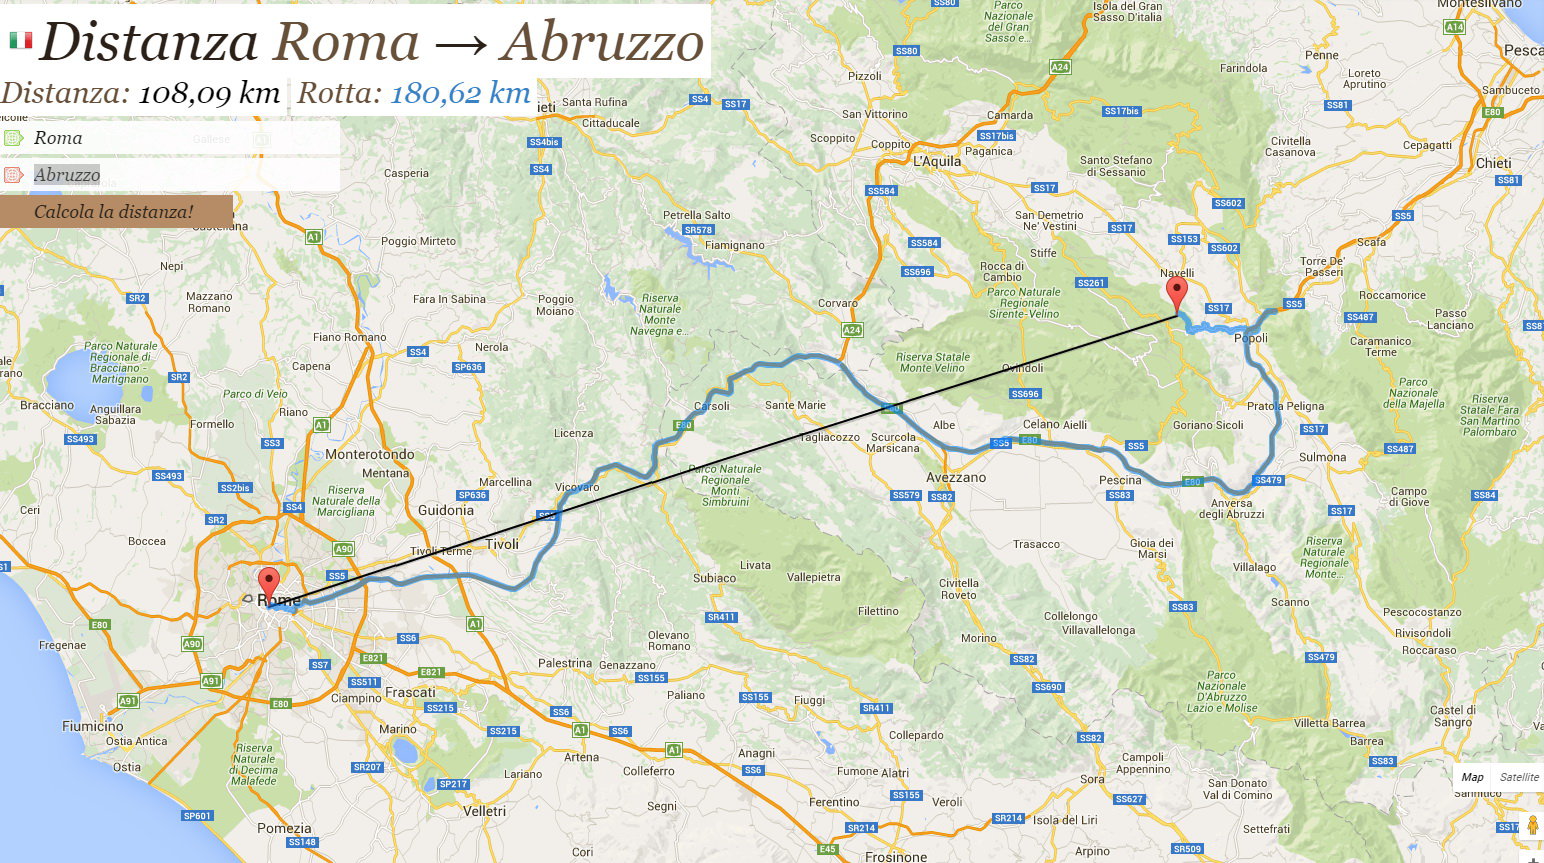 Róma-Abruzzo légvonalban 108 km távolság, kb. most ennyi centi a különbség hórétegben is